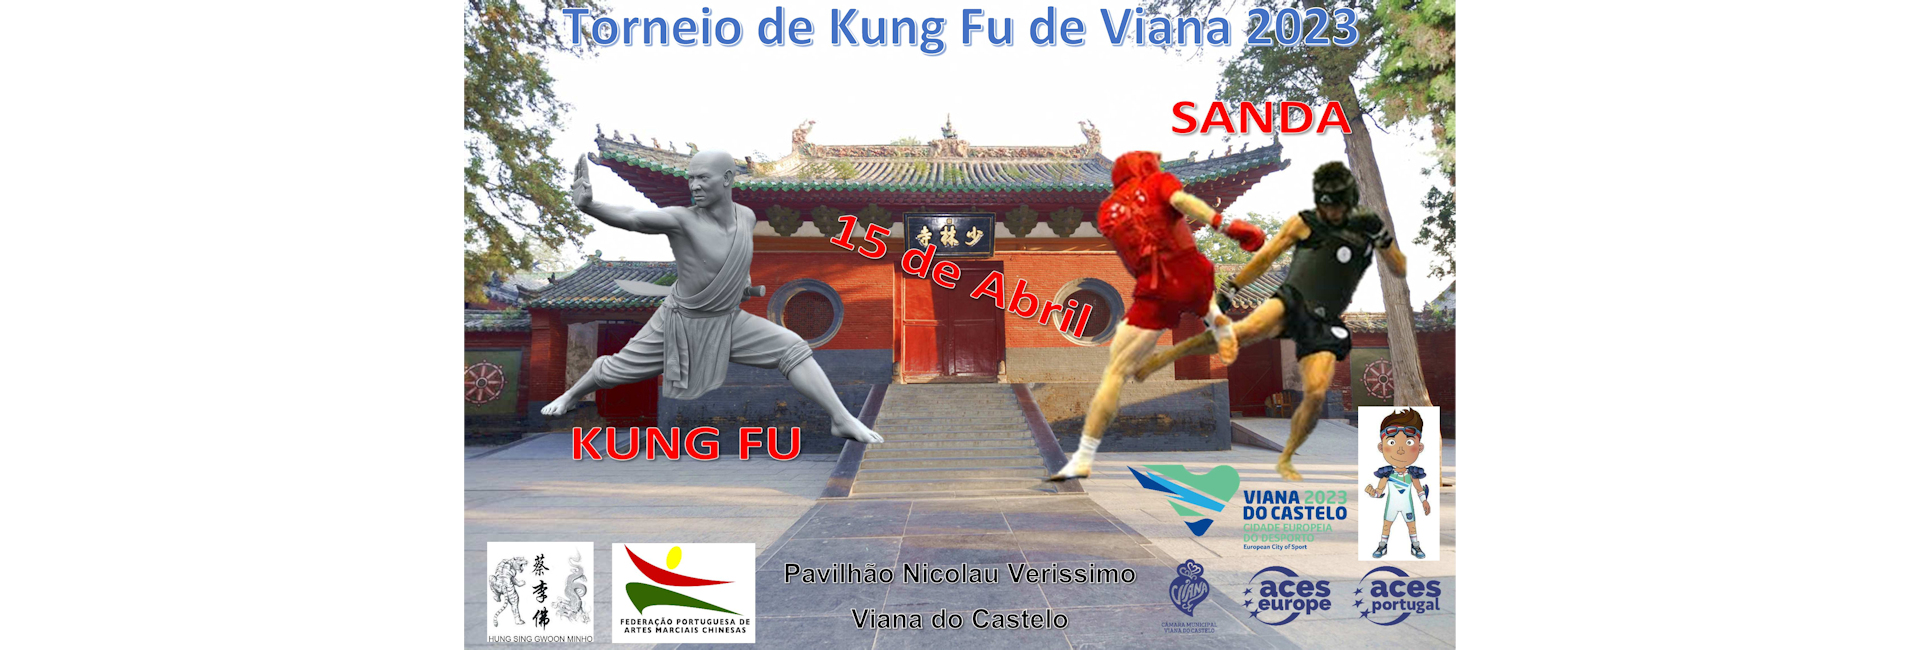 Torneio Kung-Fu Viana 2023